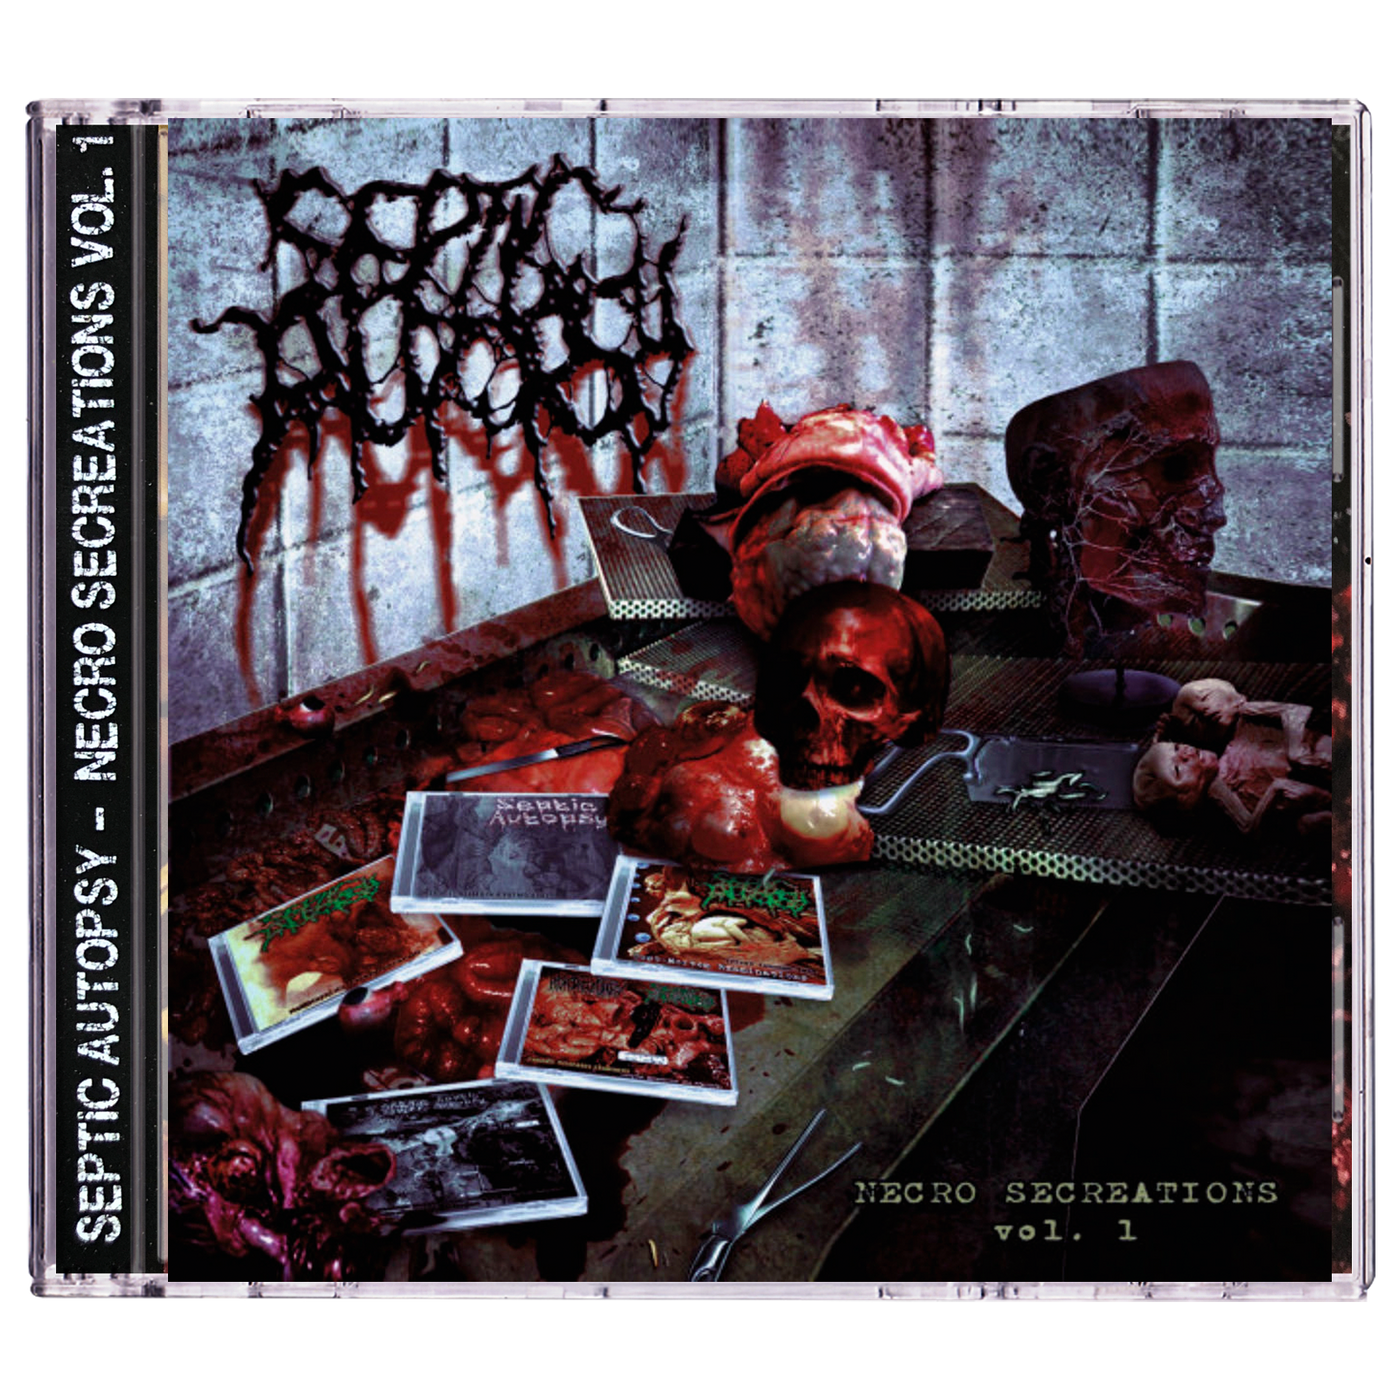 Septic Autopsy 'Necro Secreations Vol. 1' CD